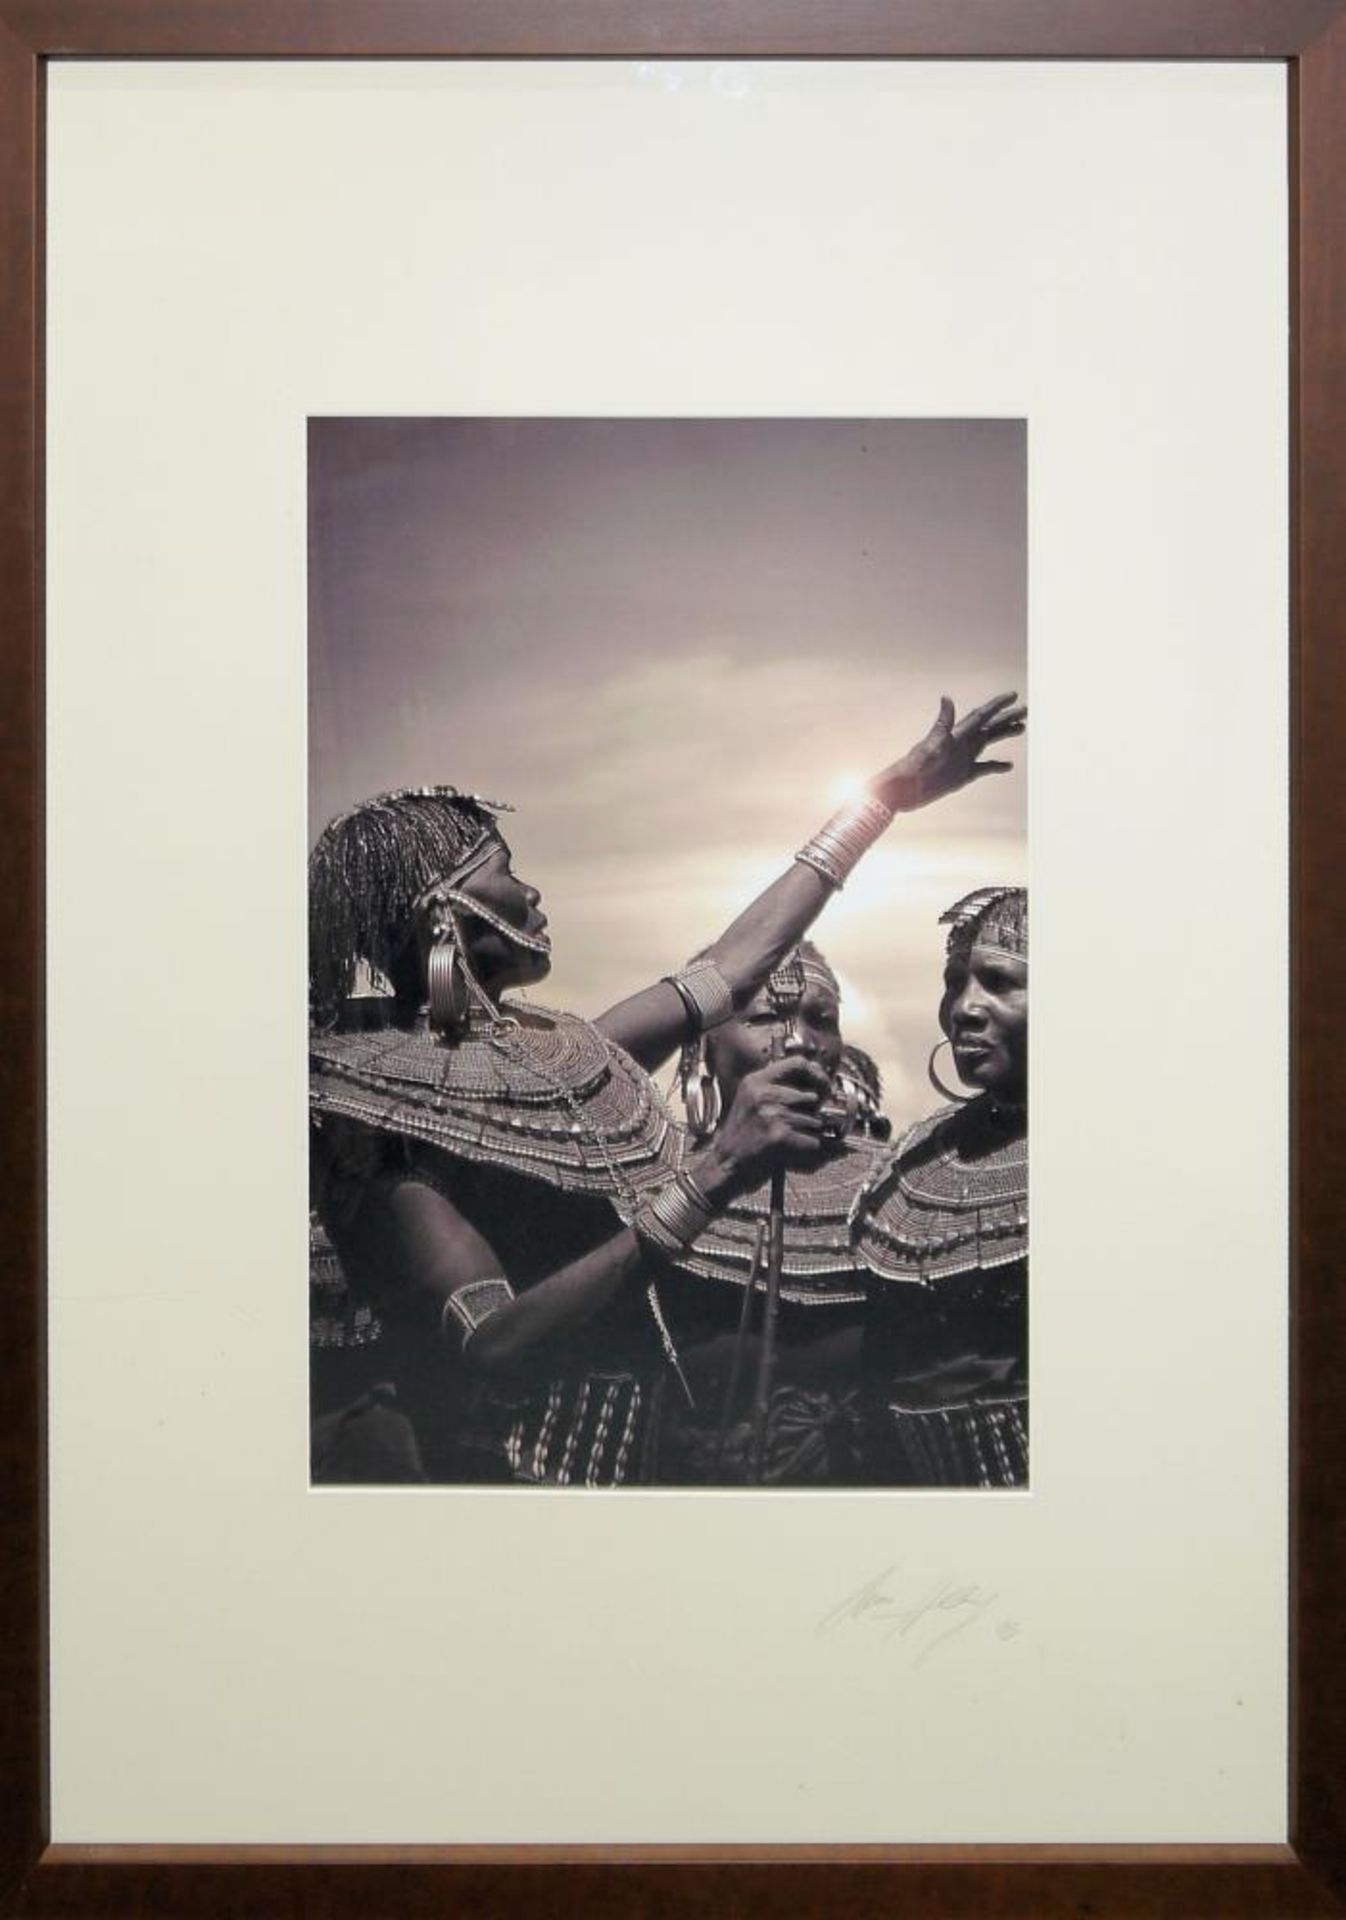 Timo Heiny, Sammlungsnachlass mit 14 signierten Fotografien, Portraits von Menschen aus Afrika und